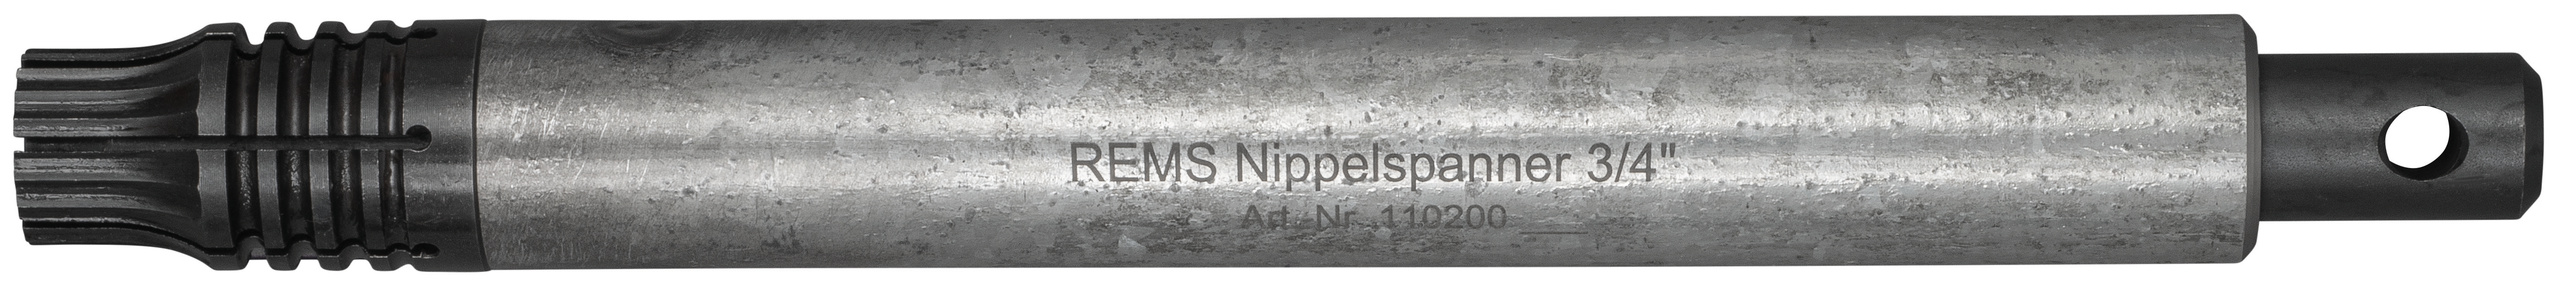 <br/>REMS Nippelspanner 3/4''